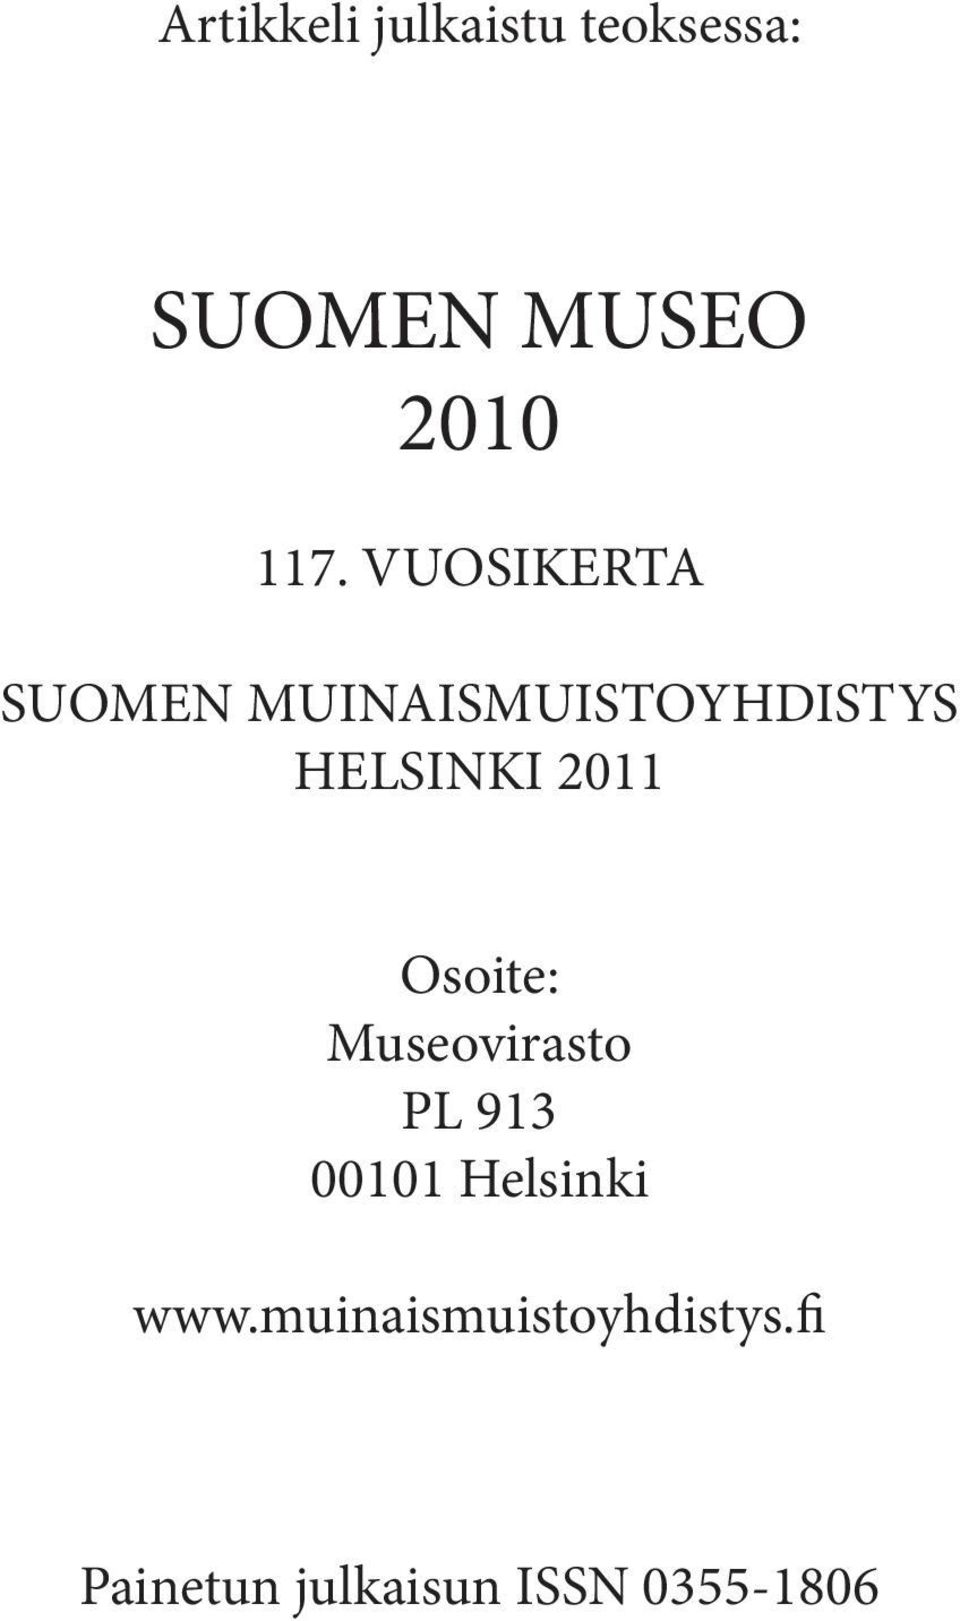 Osoite: Museovirasto PL 913 00101 Helsinki www.